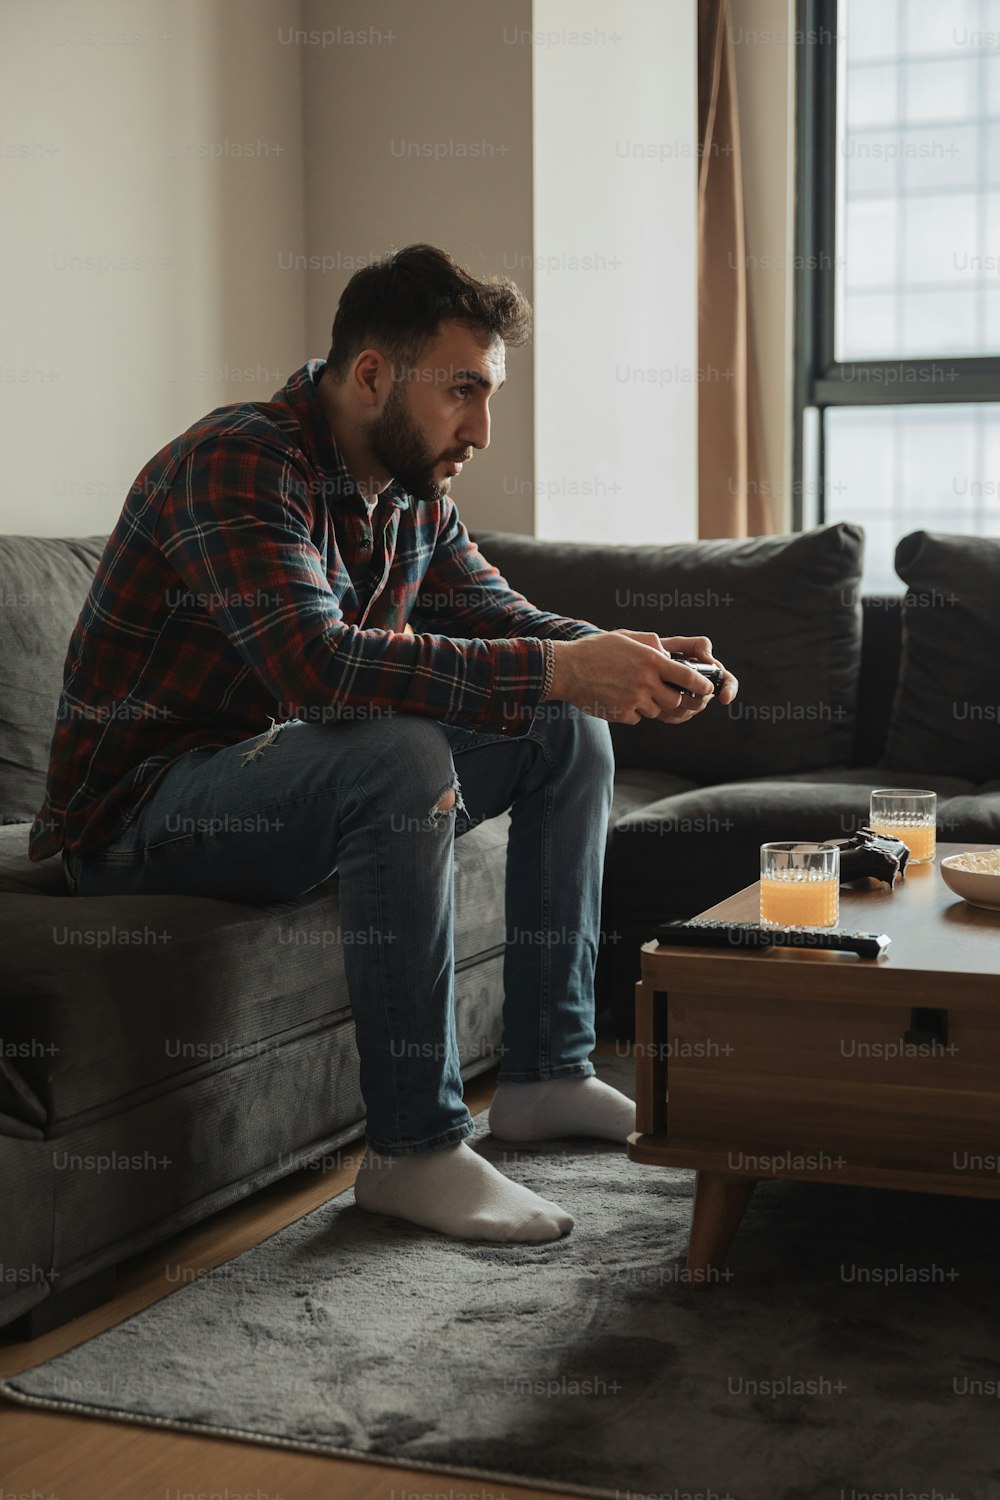 Ein Mann sitzt auf einer Couch und spielt ein Videospiel